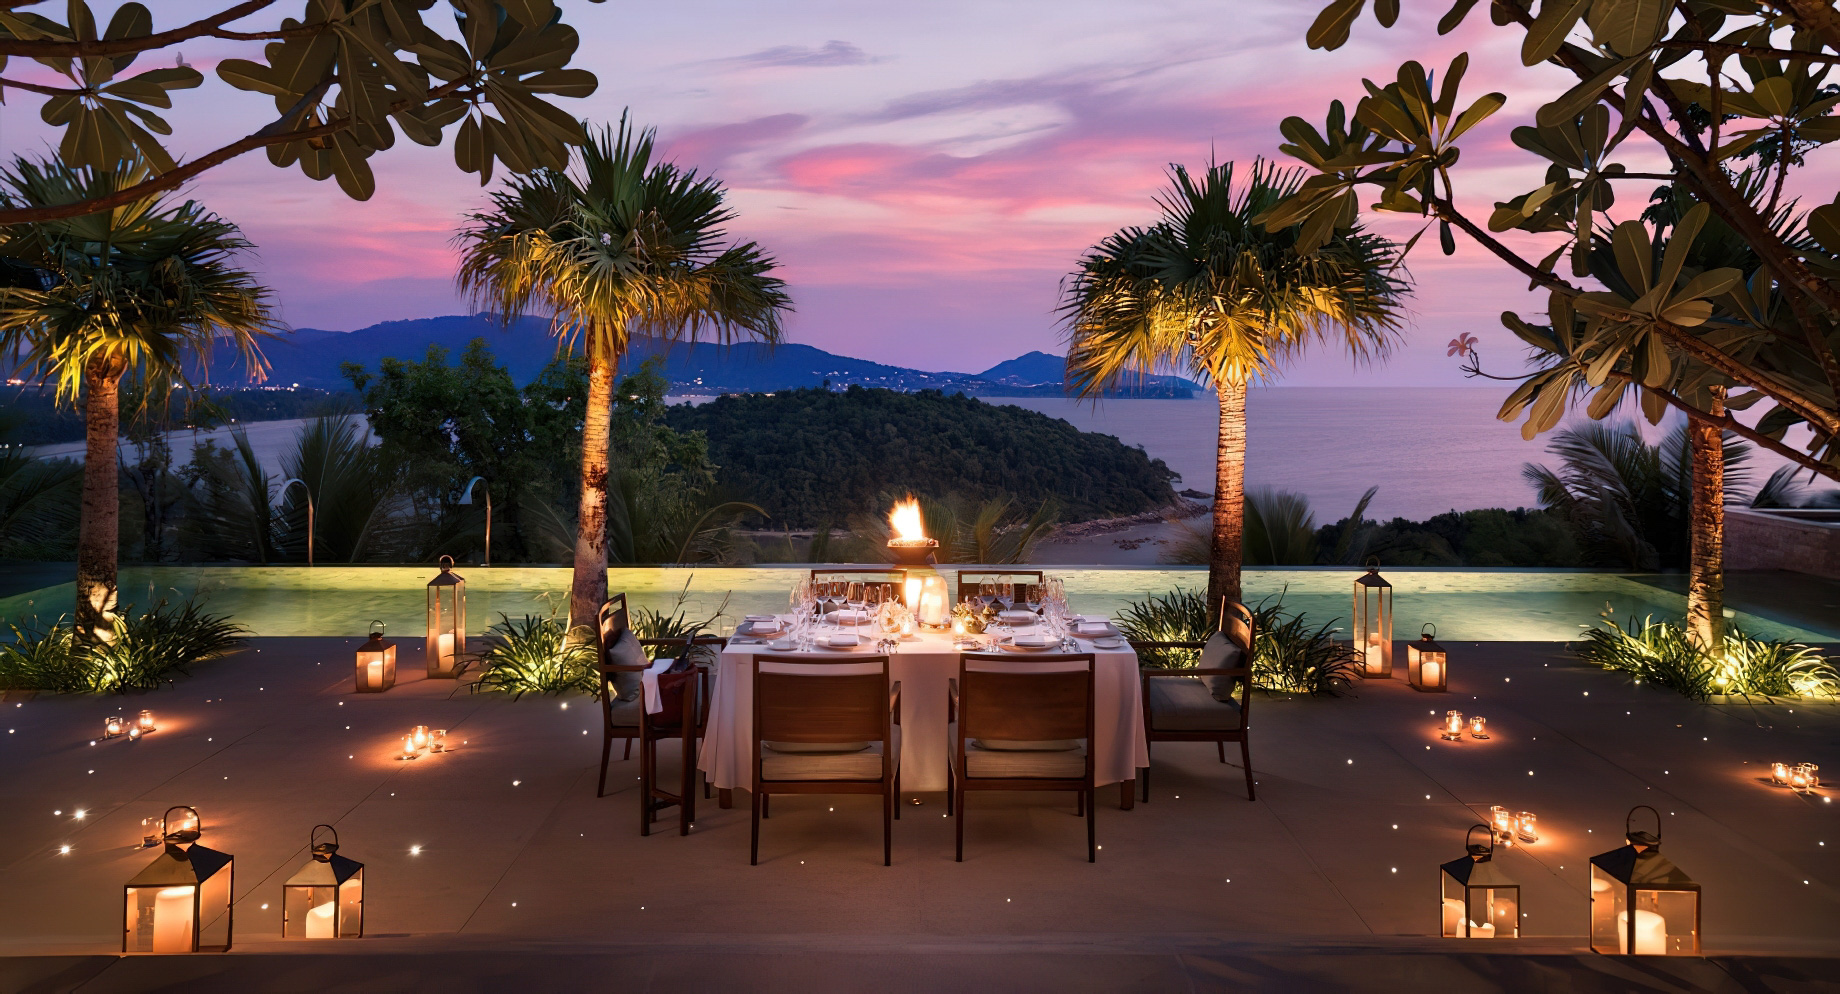 Anantara Layan Phuket Resort & Residences – Thailand – Pool Deck Dining Sunset View